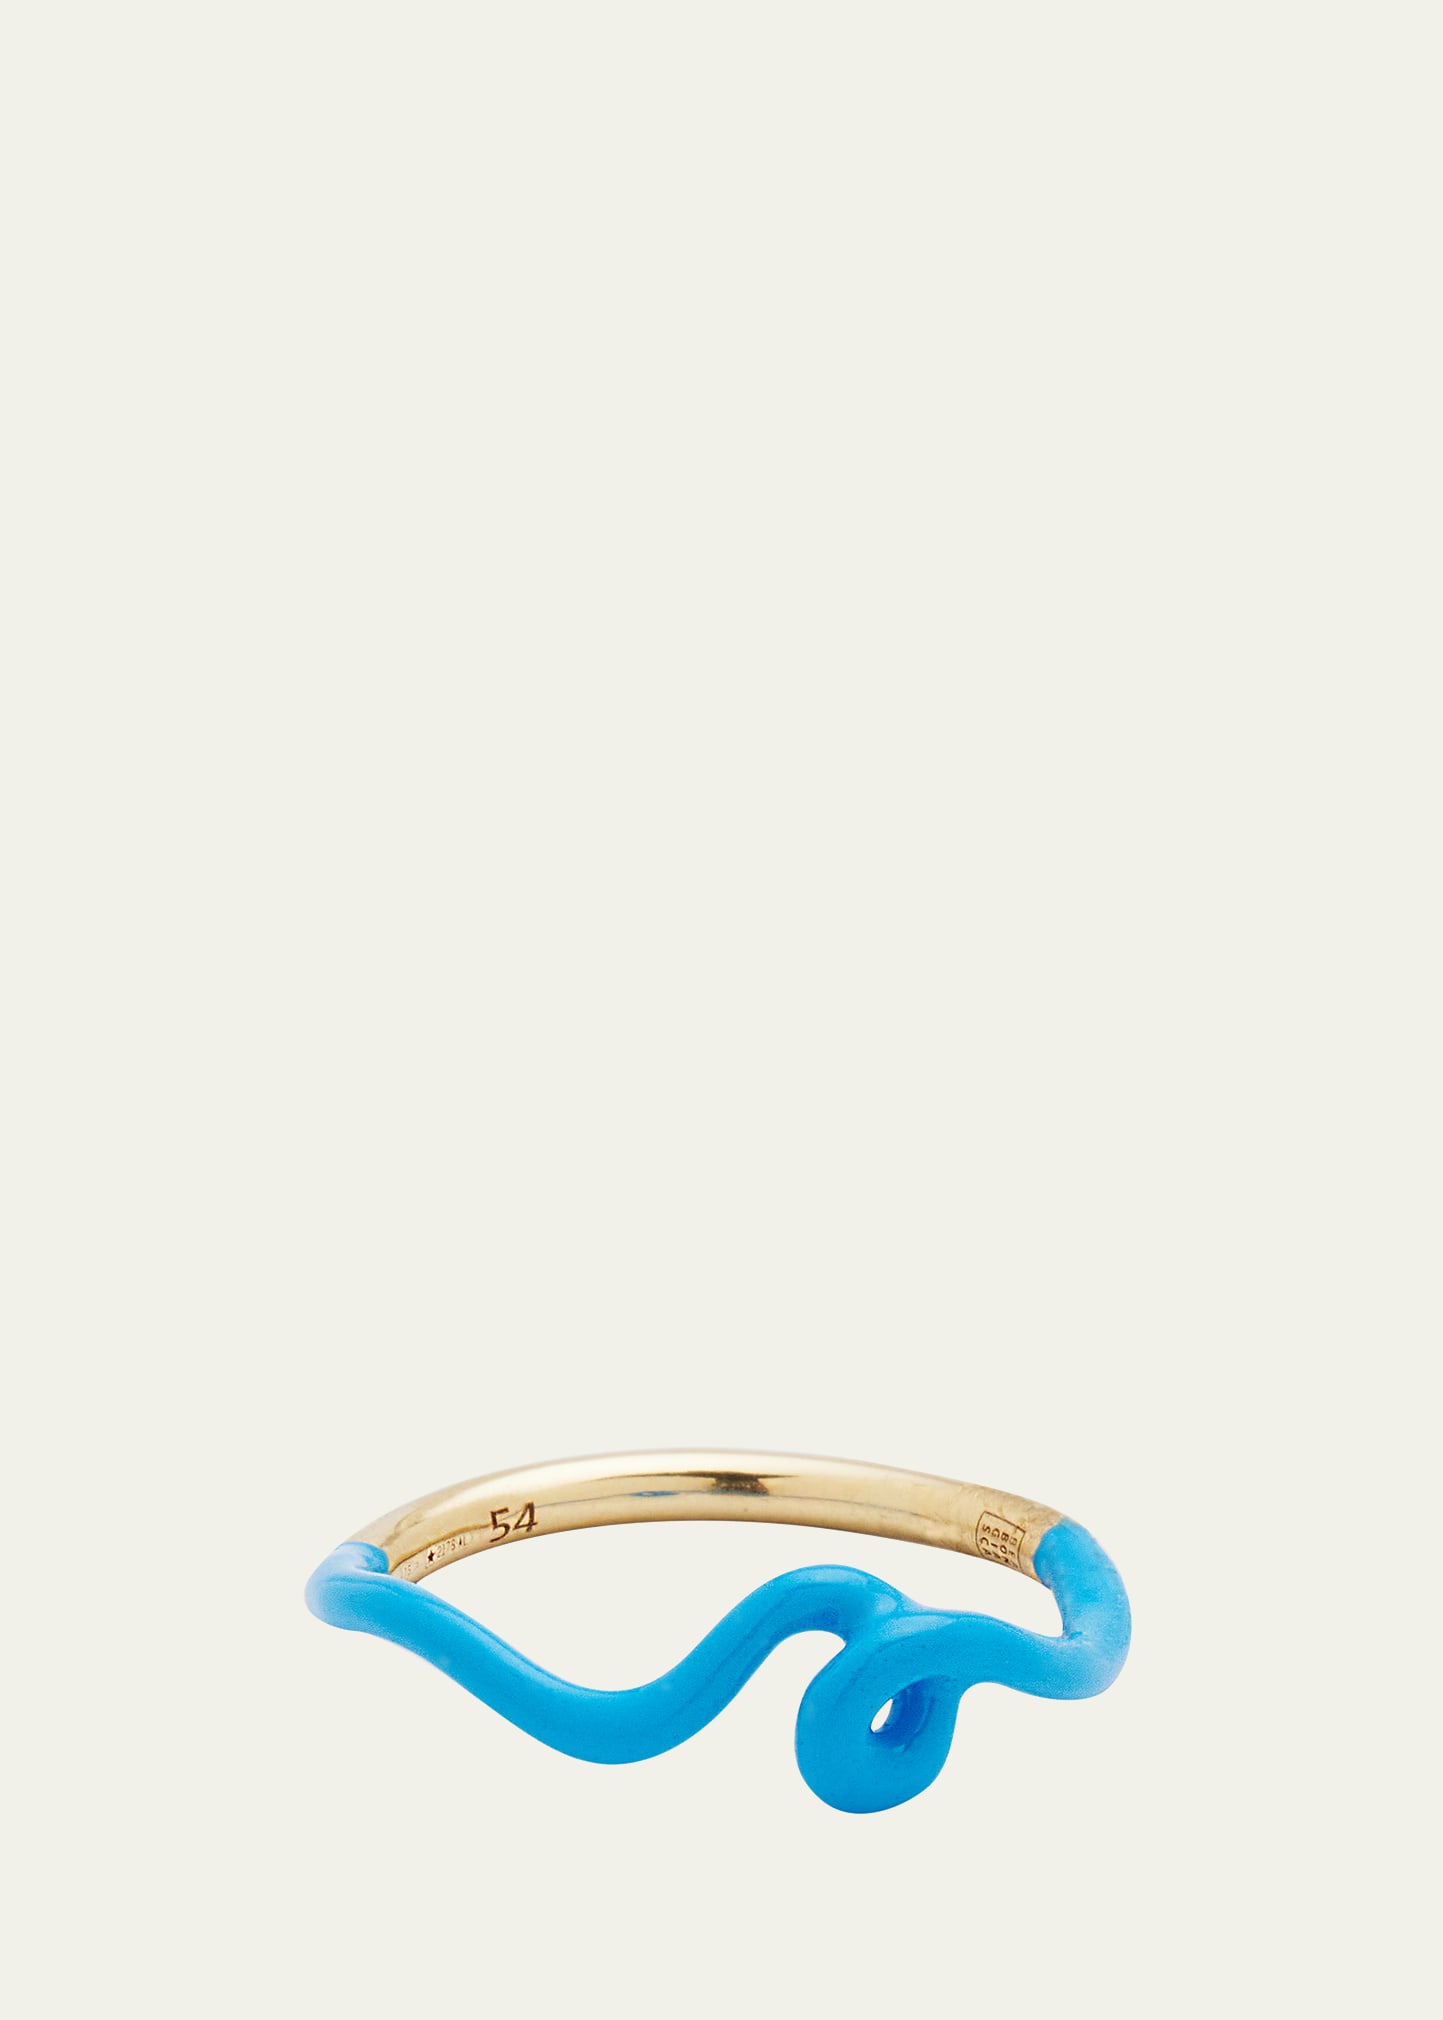 Bea Bongiasca Wow Mini Mono Ring With Turquoise Enamel